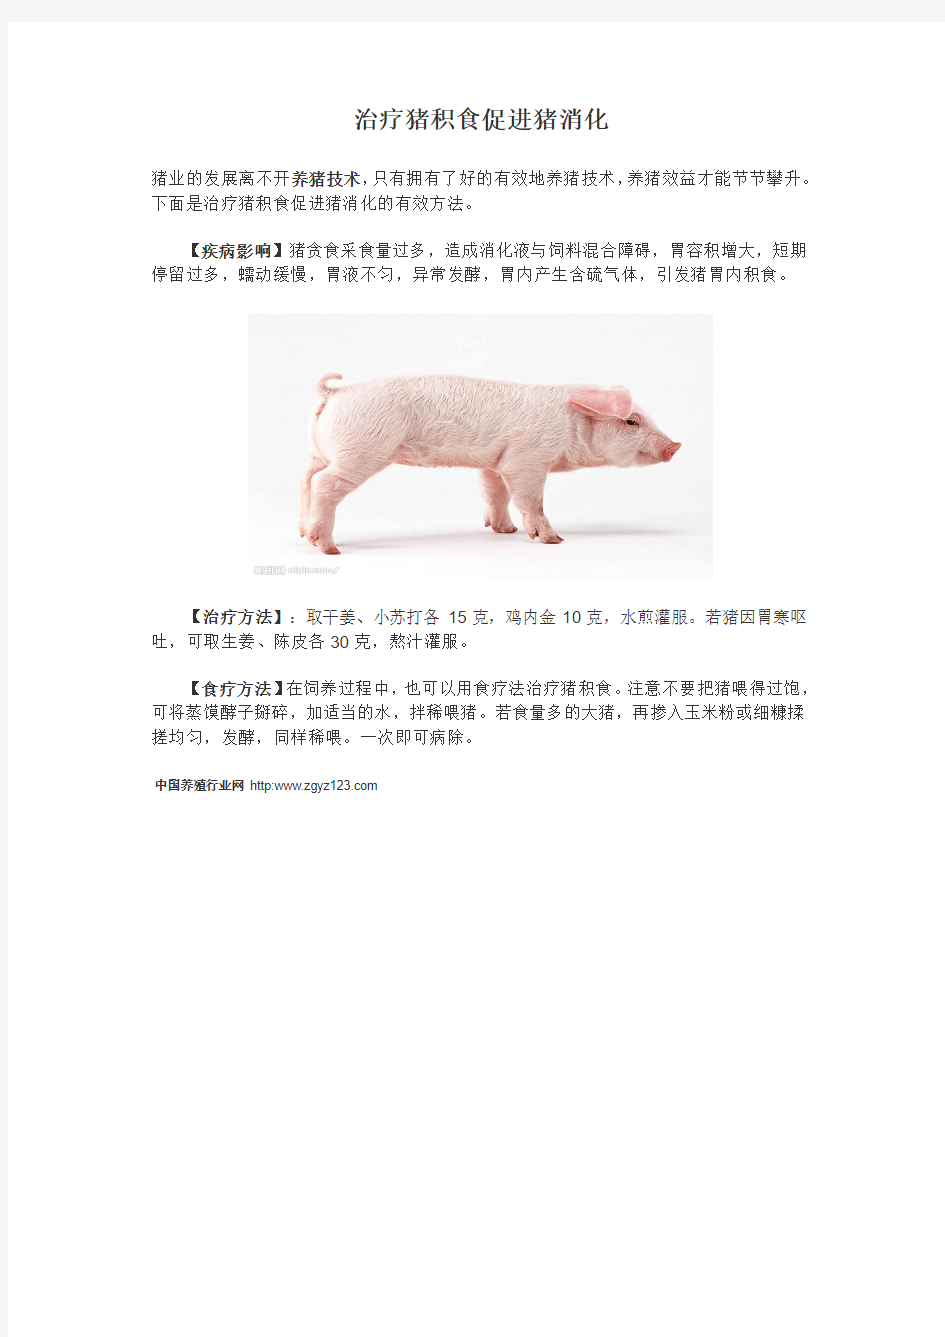 治疗猪积食促进猪消化的方法